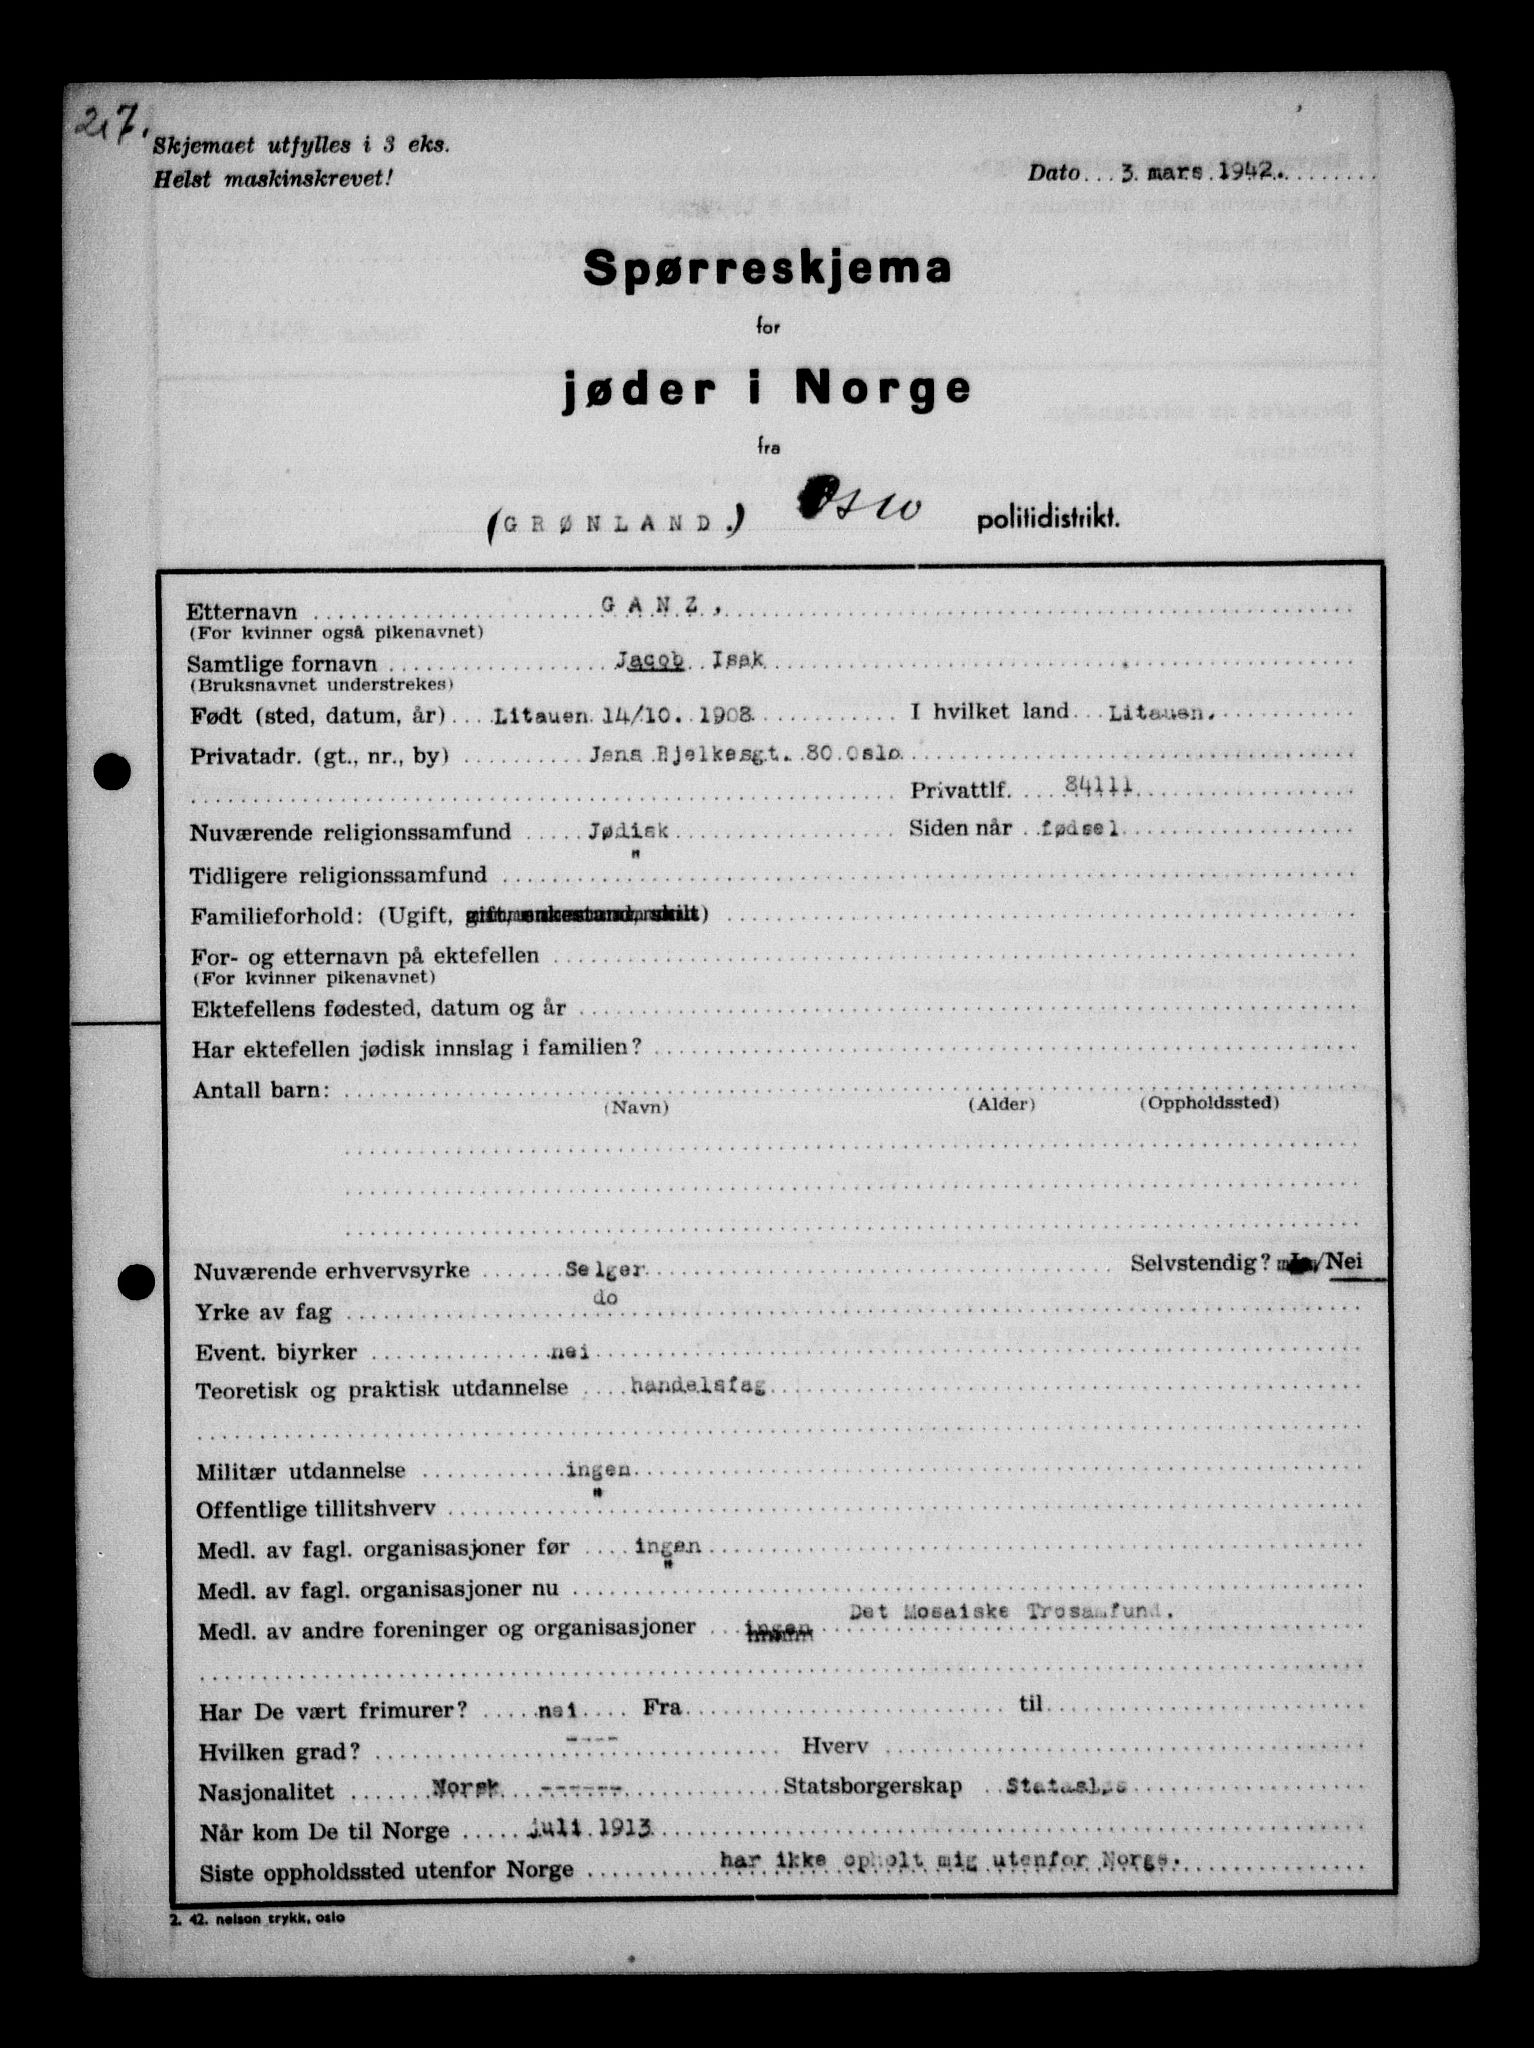 RA, Statspolitiet - Hovedkontoret / Osloavdelingen, G/Ga/L0009: Spørreskjema for jøder i Norge, Oslo Alexander-Gutman, 1942, s. 207